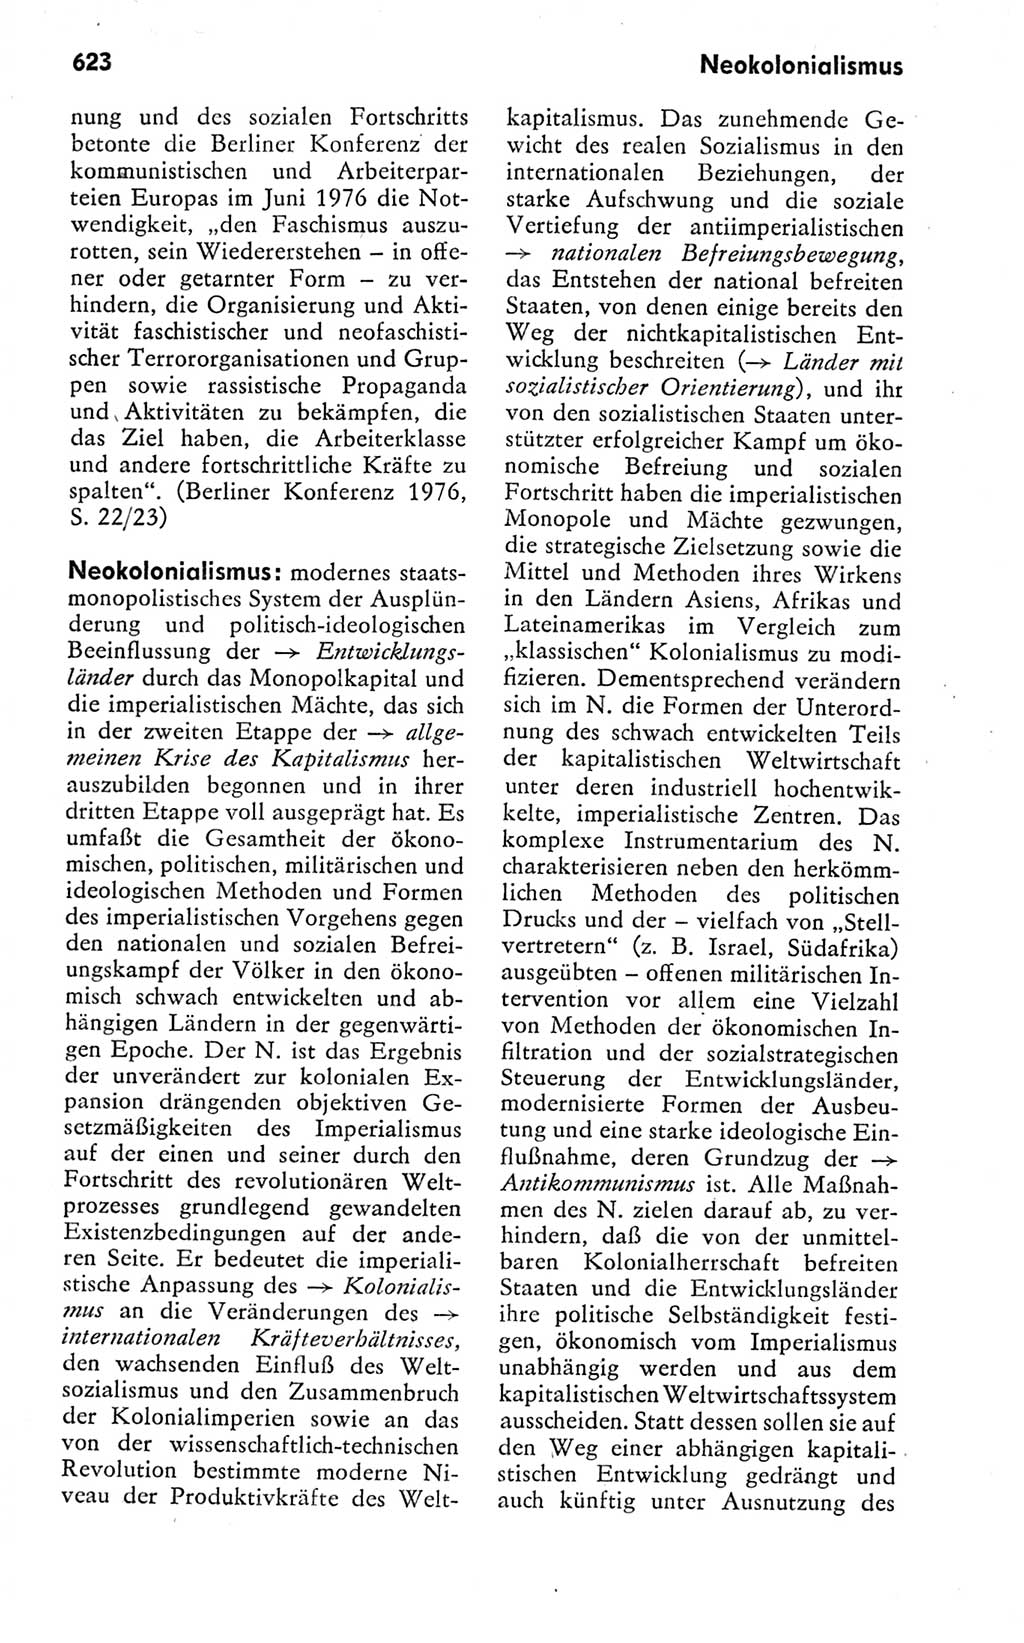 Kleines politisches Wörterbuch [Deutsche Demokratische Republik (DDR)] 1978, Seite 623 (Kl. pol. Wb. DDR 1978, S. 623)